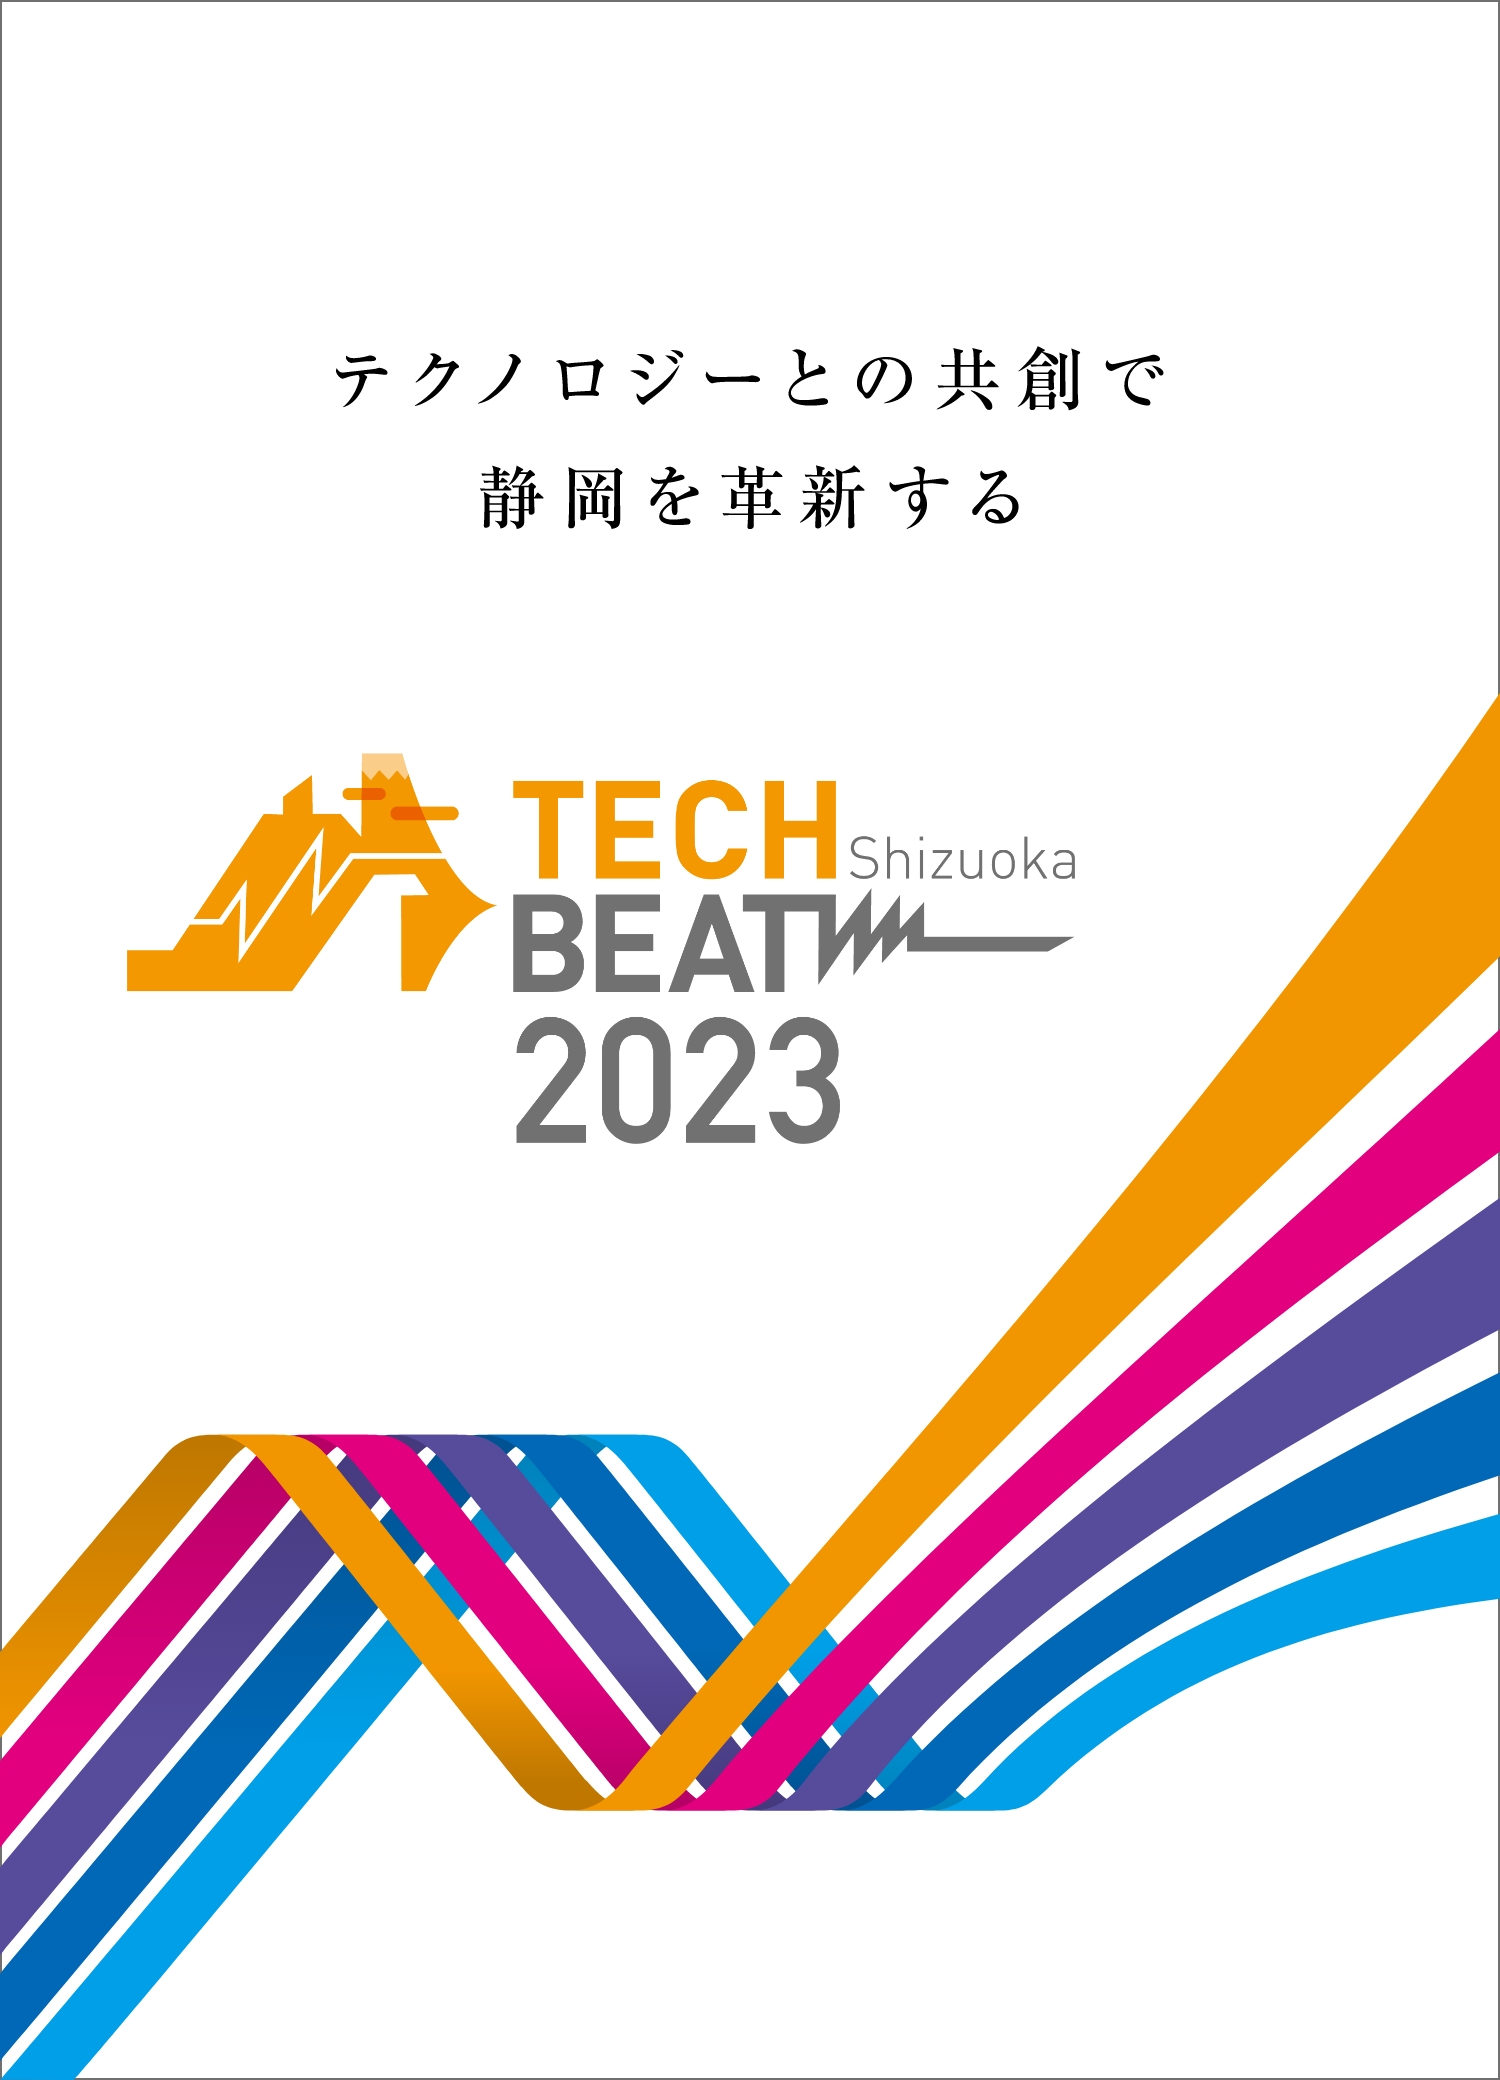 TECH BEAT Shizuoka 2023